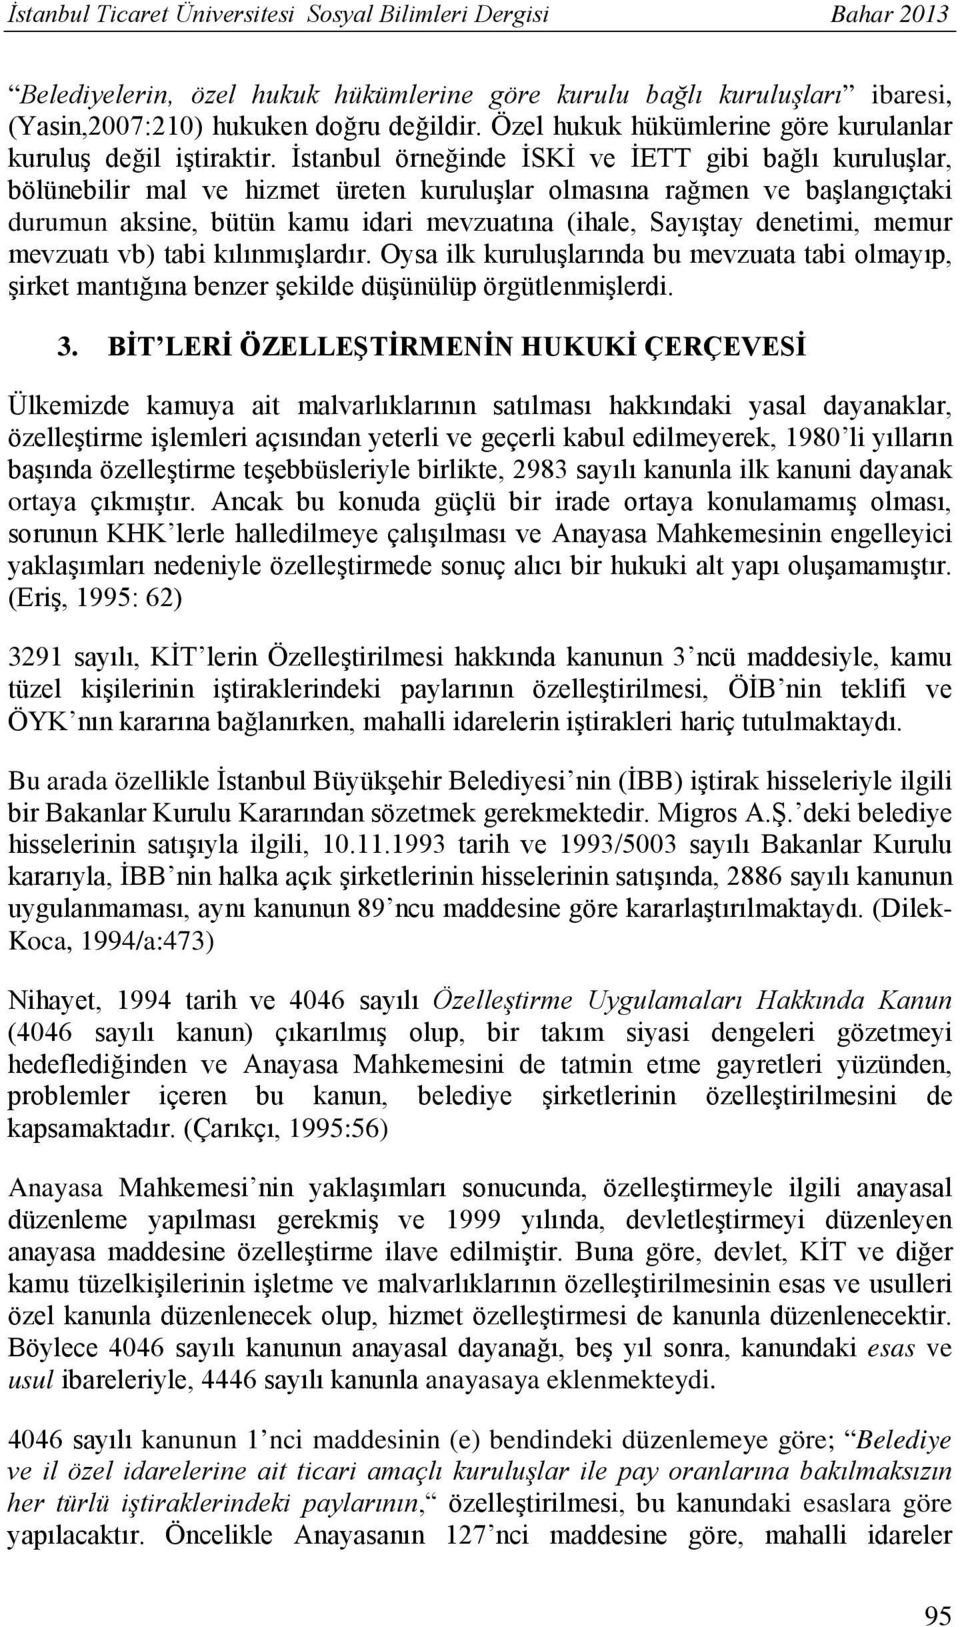 İstanbul örneğinde İSKİ ve İETT gibi bağlı kuruluşlar, bölünebilir mal ve hizmet üreten kuruluşlar olmasına rağmen ve başlangıçtaki durumun aksine, bütün kamu idari mevzuatına (ihale, Sayıştay